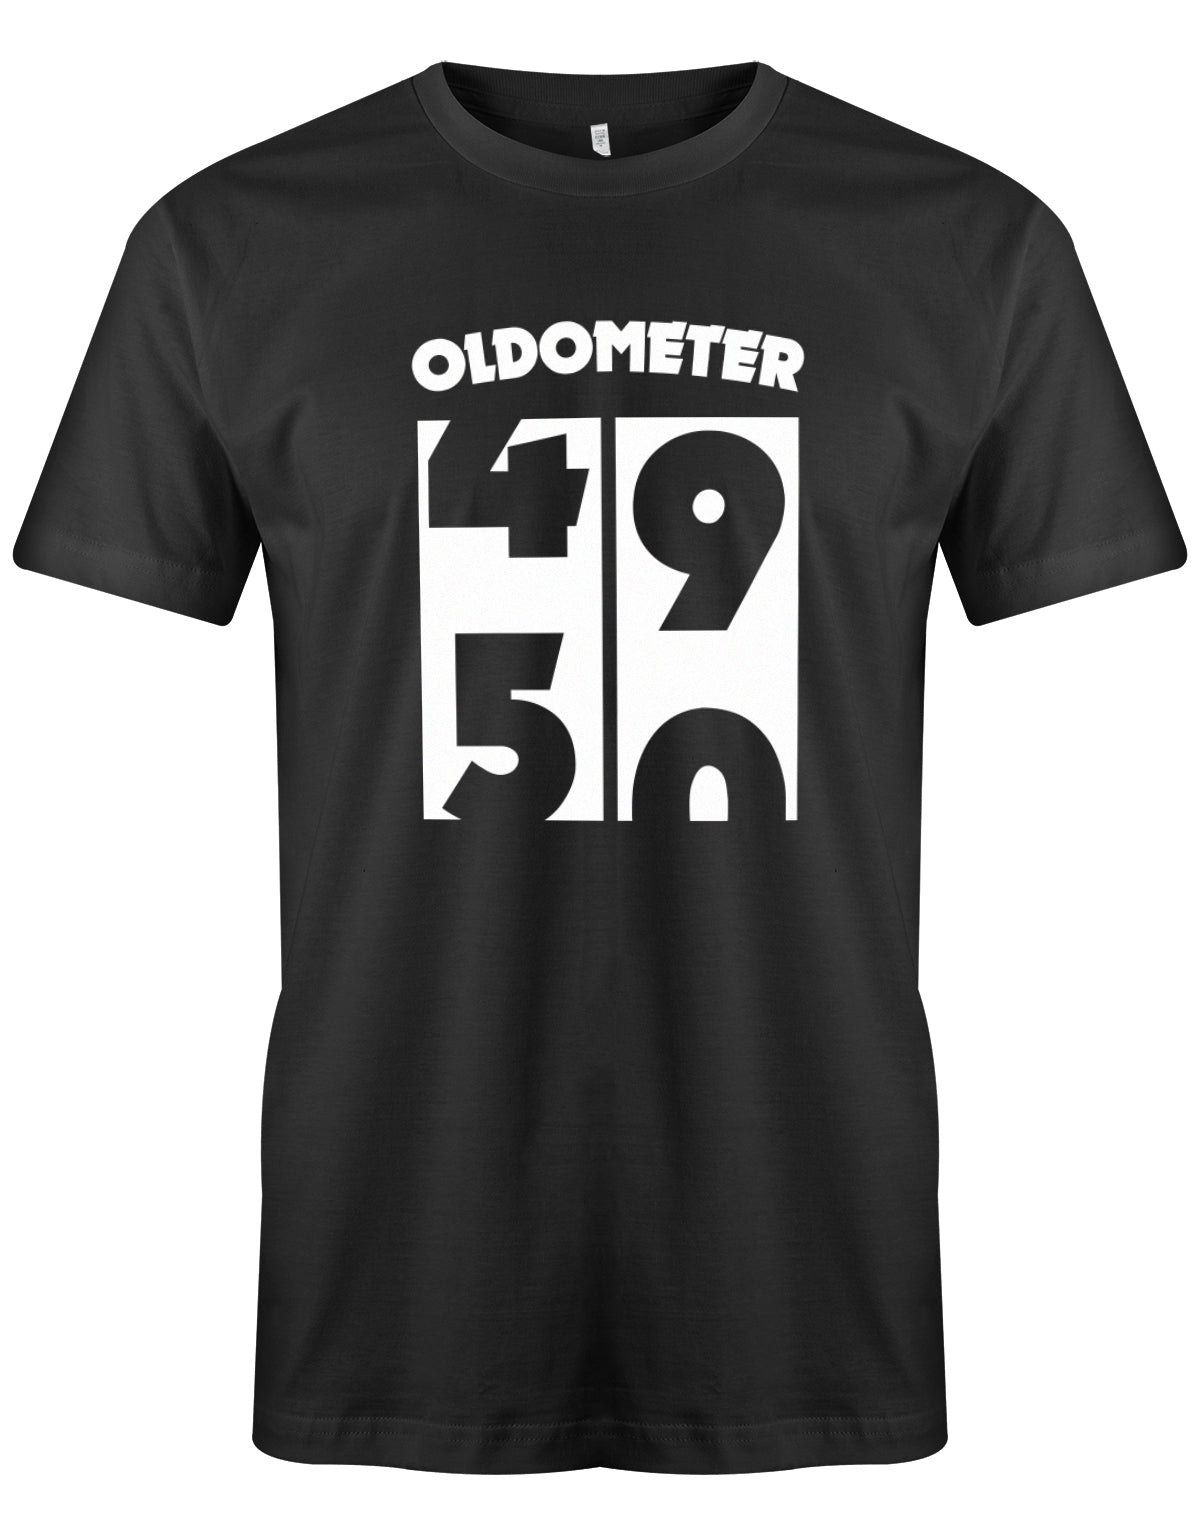 Lustiges T-Shirt zum 50 Geburtstag für den Mann Bedruckt mit Oldometer von 49 wechsel zu 50 Jahren. Schwarz